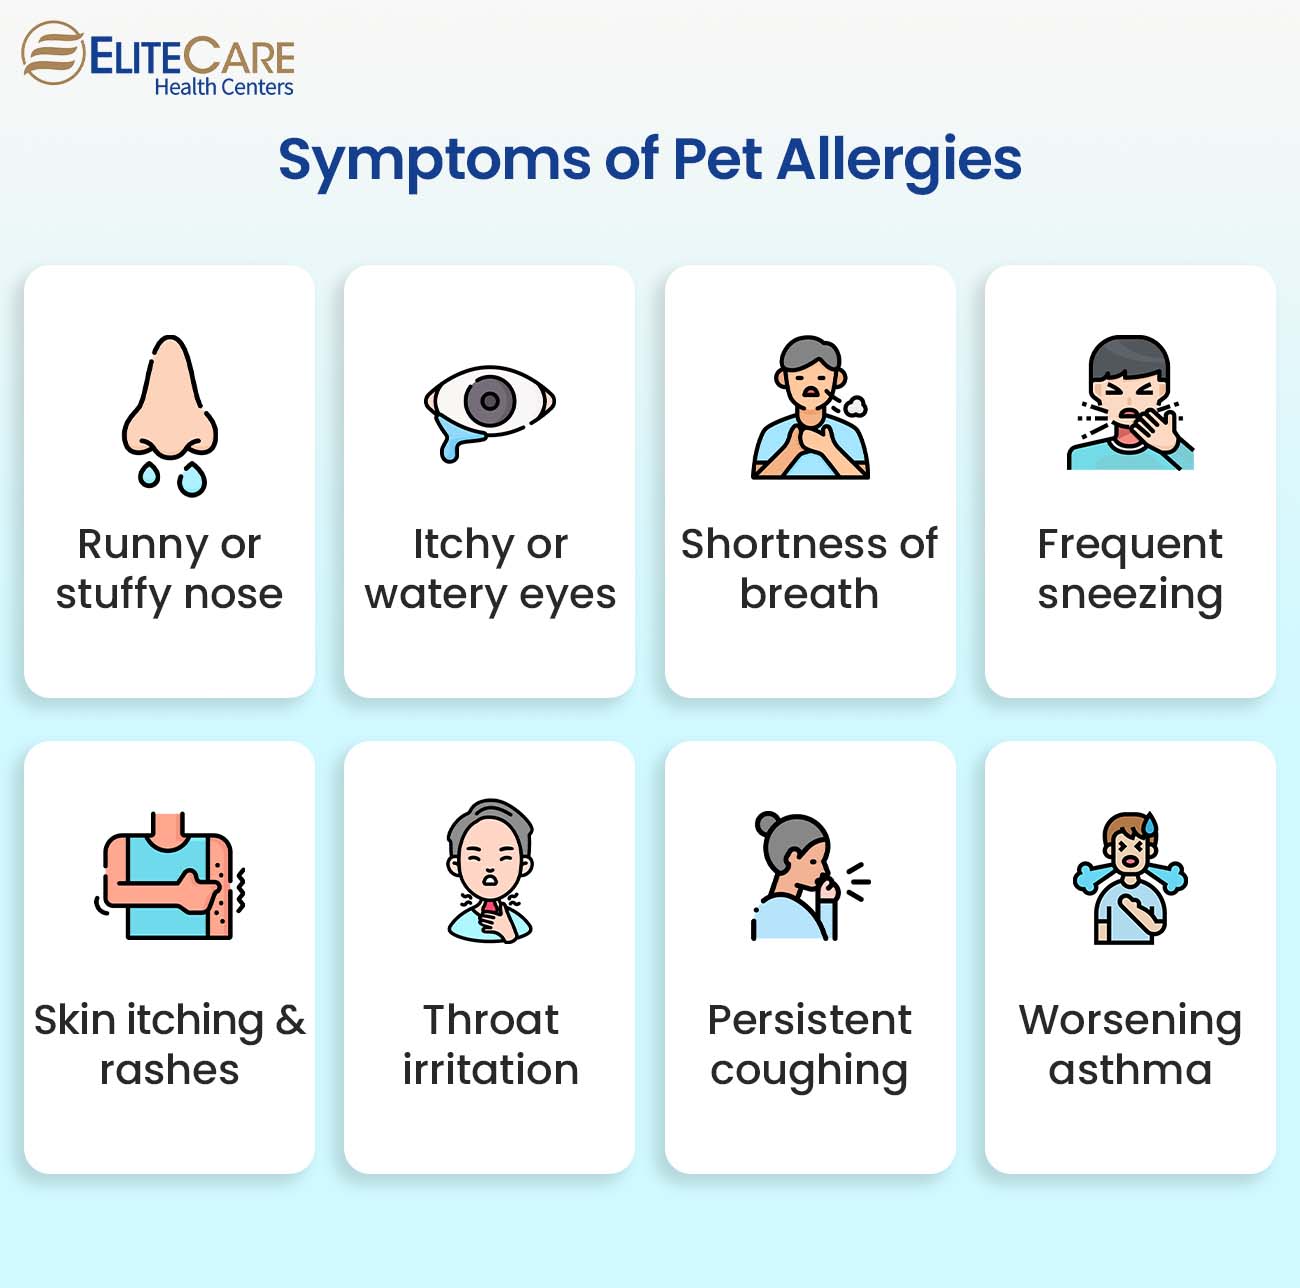 Symptoms of Pet Allergies